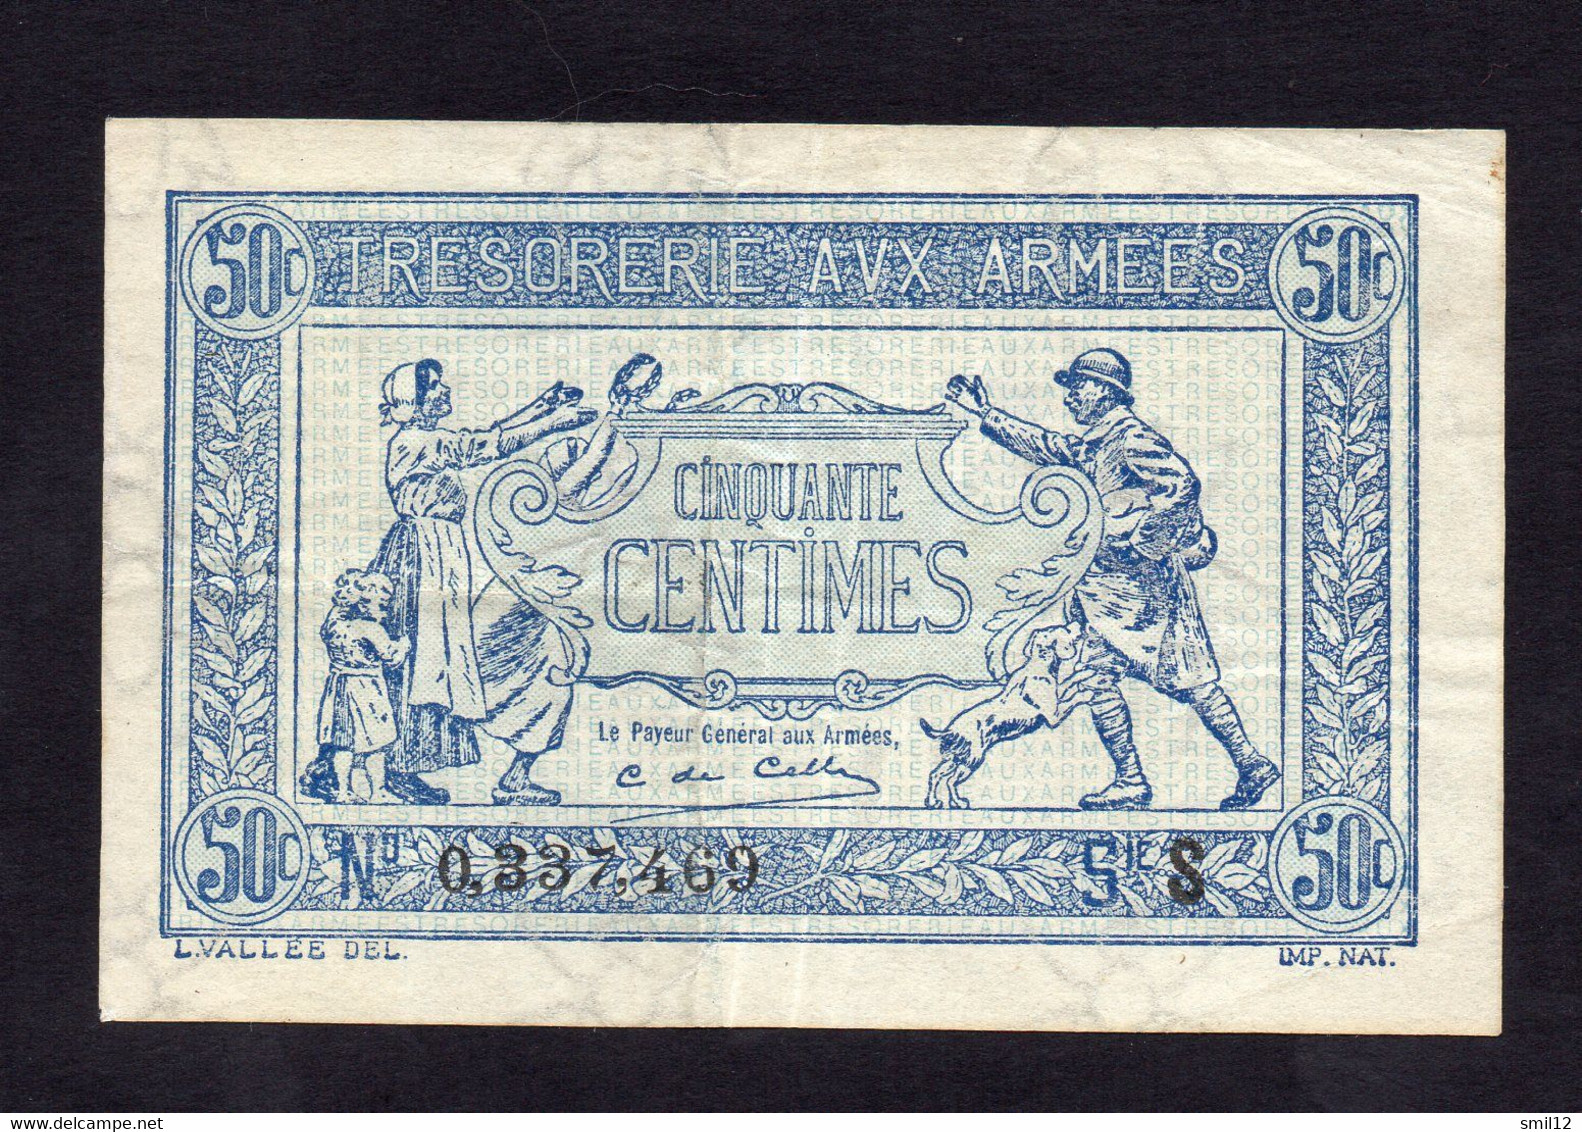 Trésorerie Aux Armées - 50 Centimes - Lettre S (2) - 1917-1919 Tesoreria Delle Armate